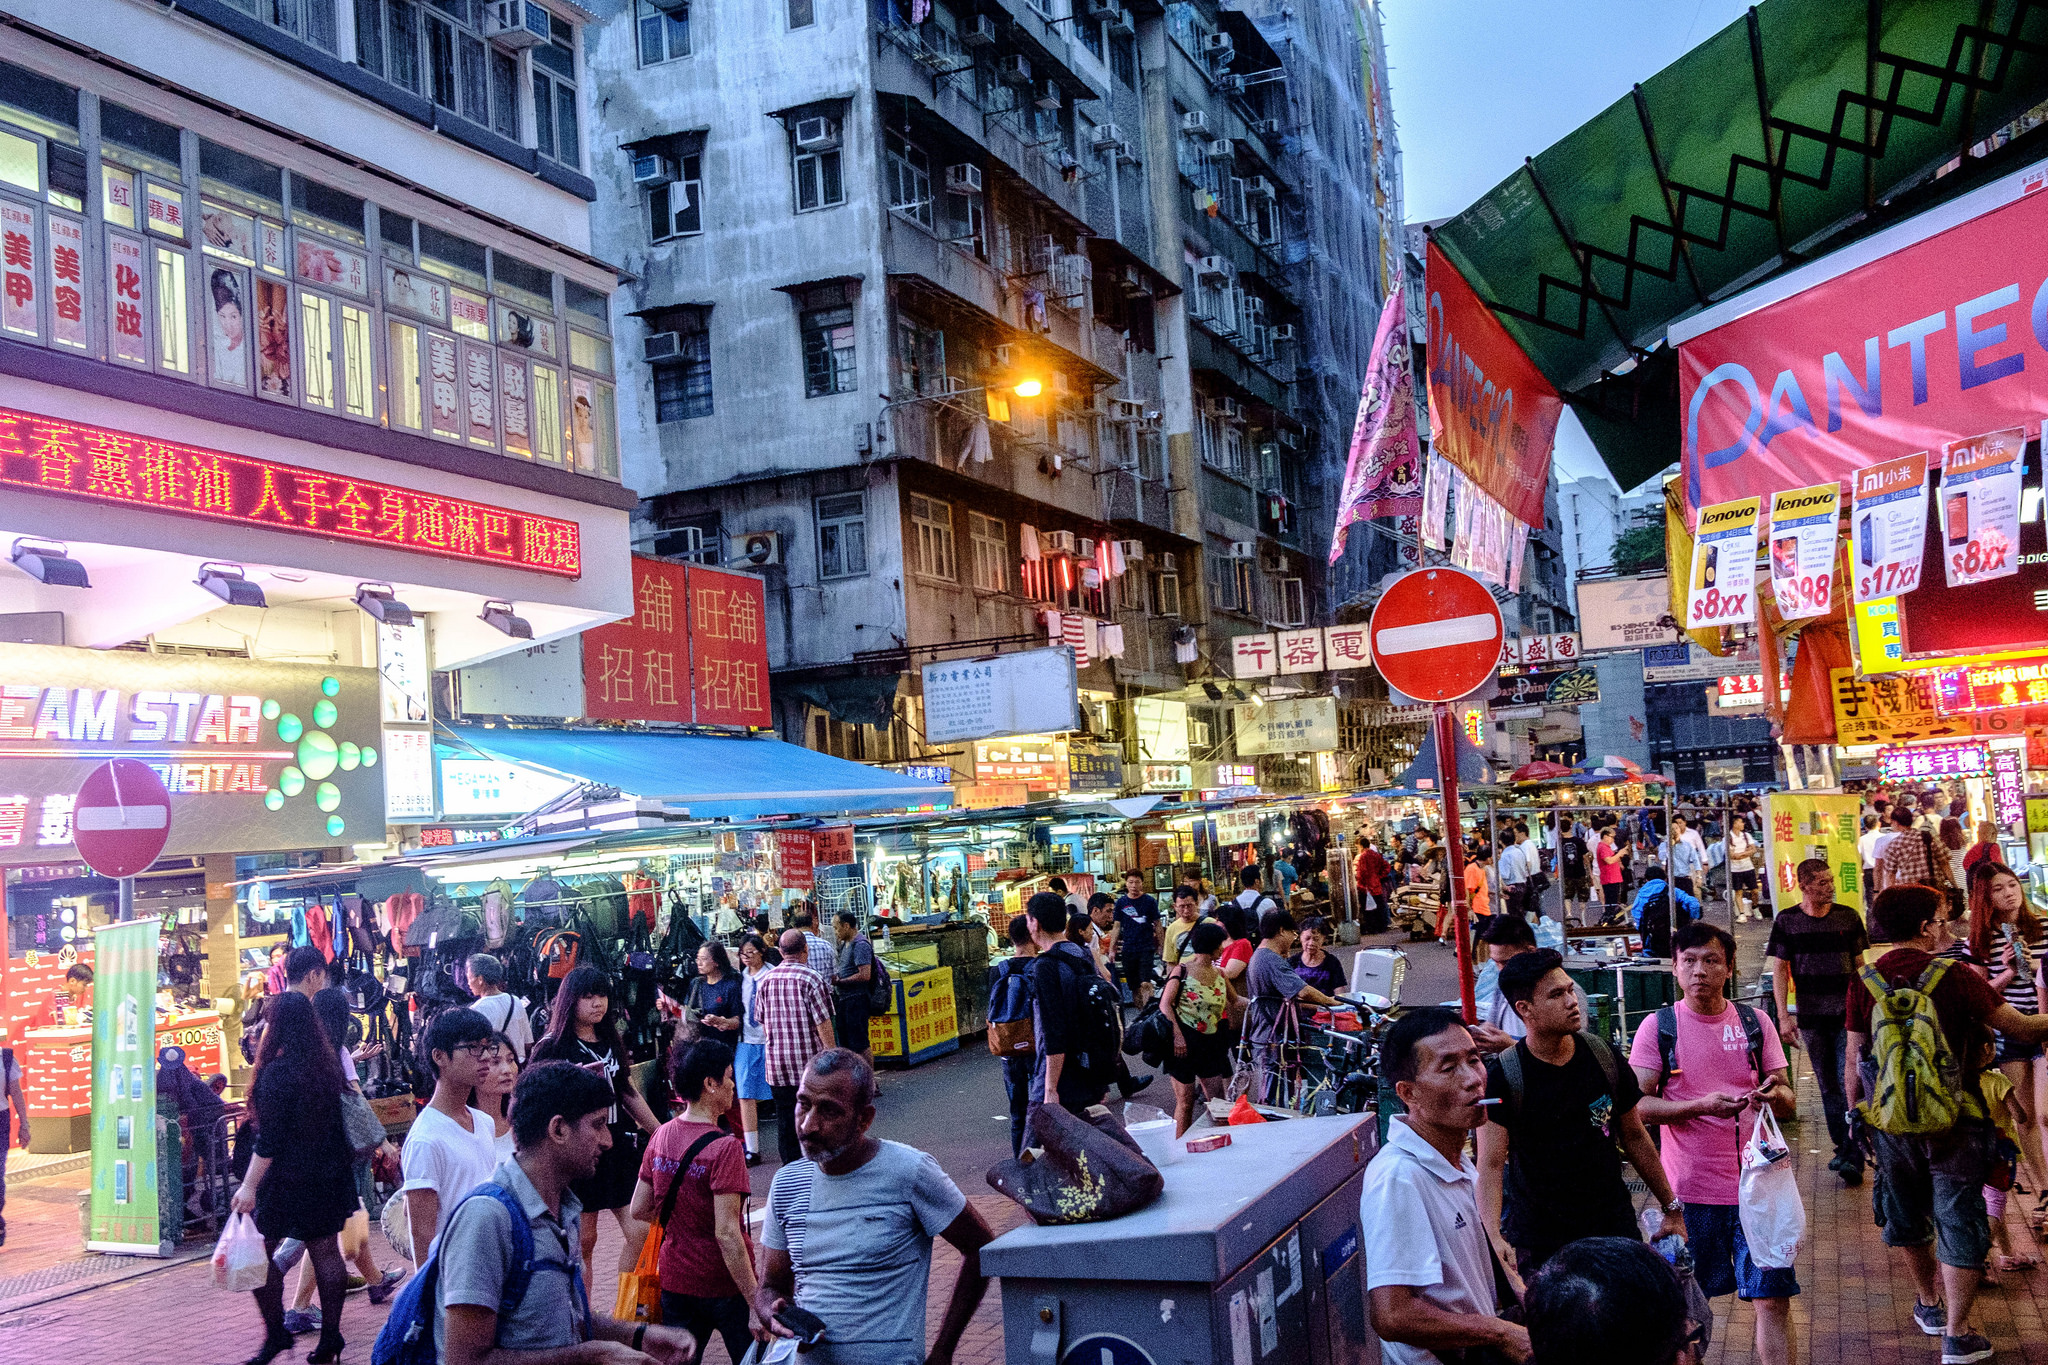 Hongkongon az utcai árusnál is lehet mobillal fizetni